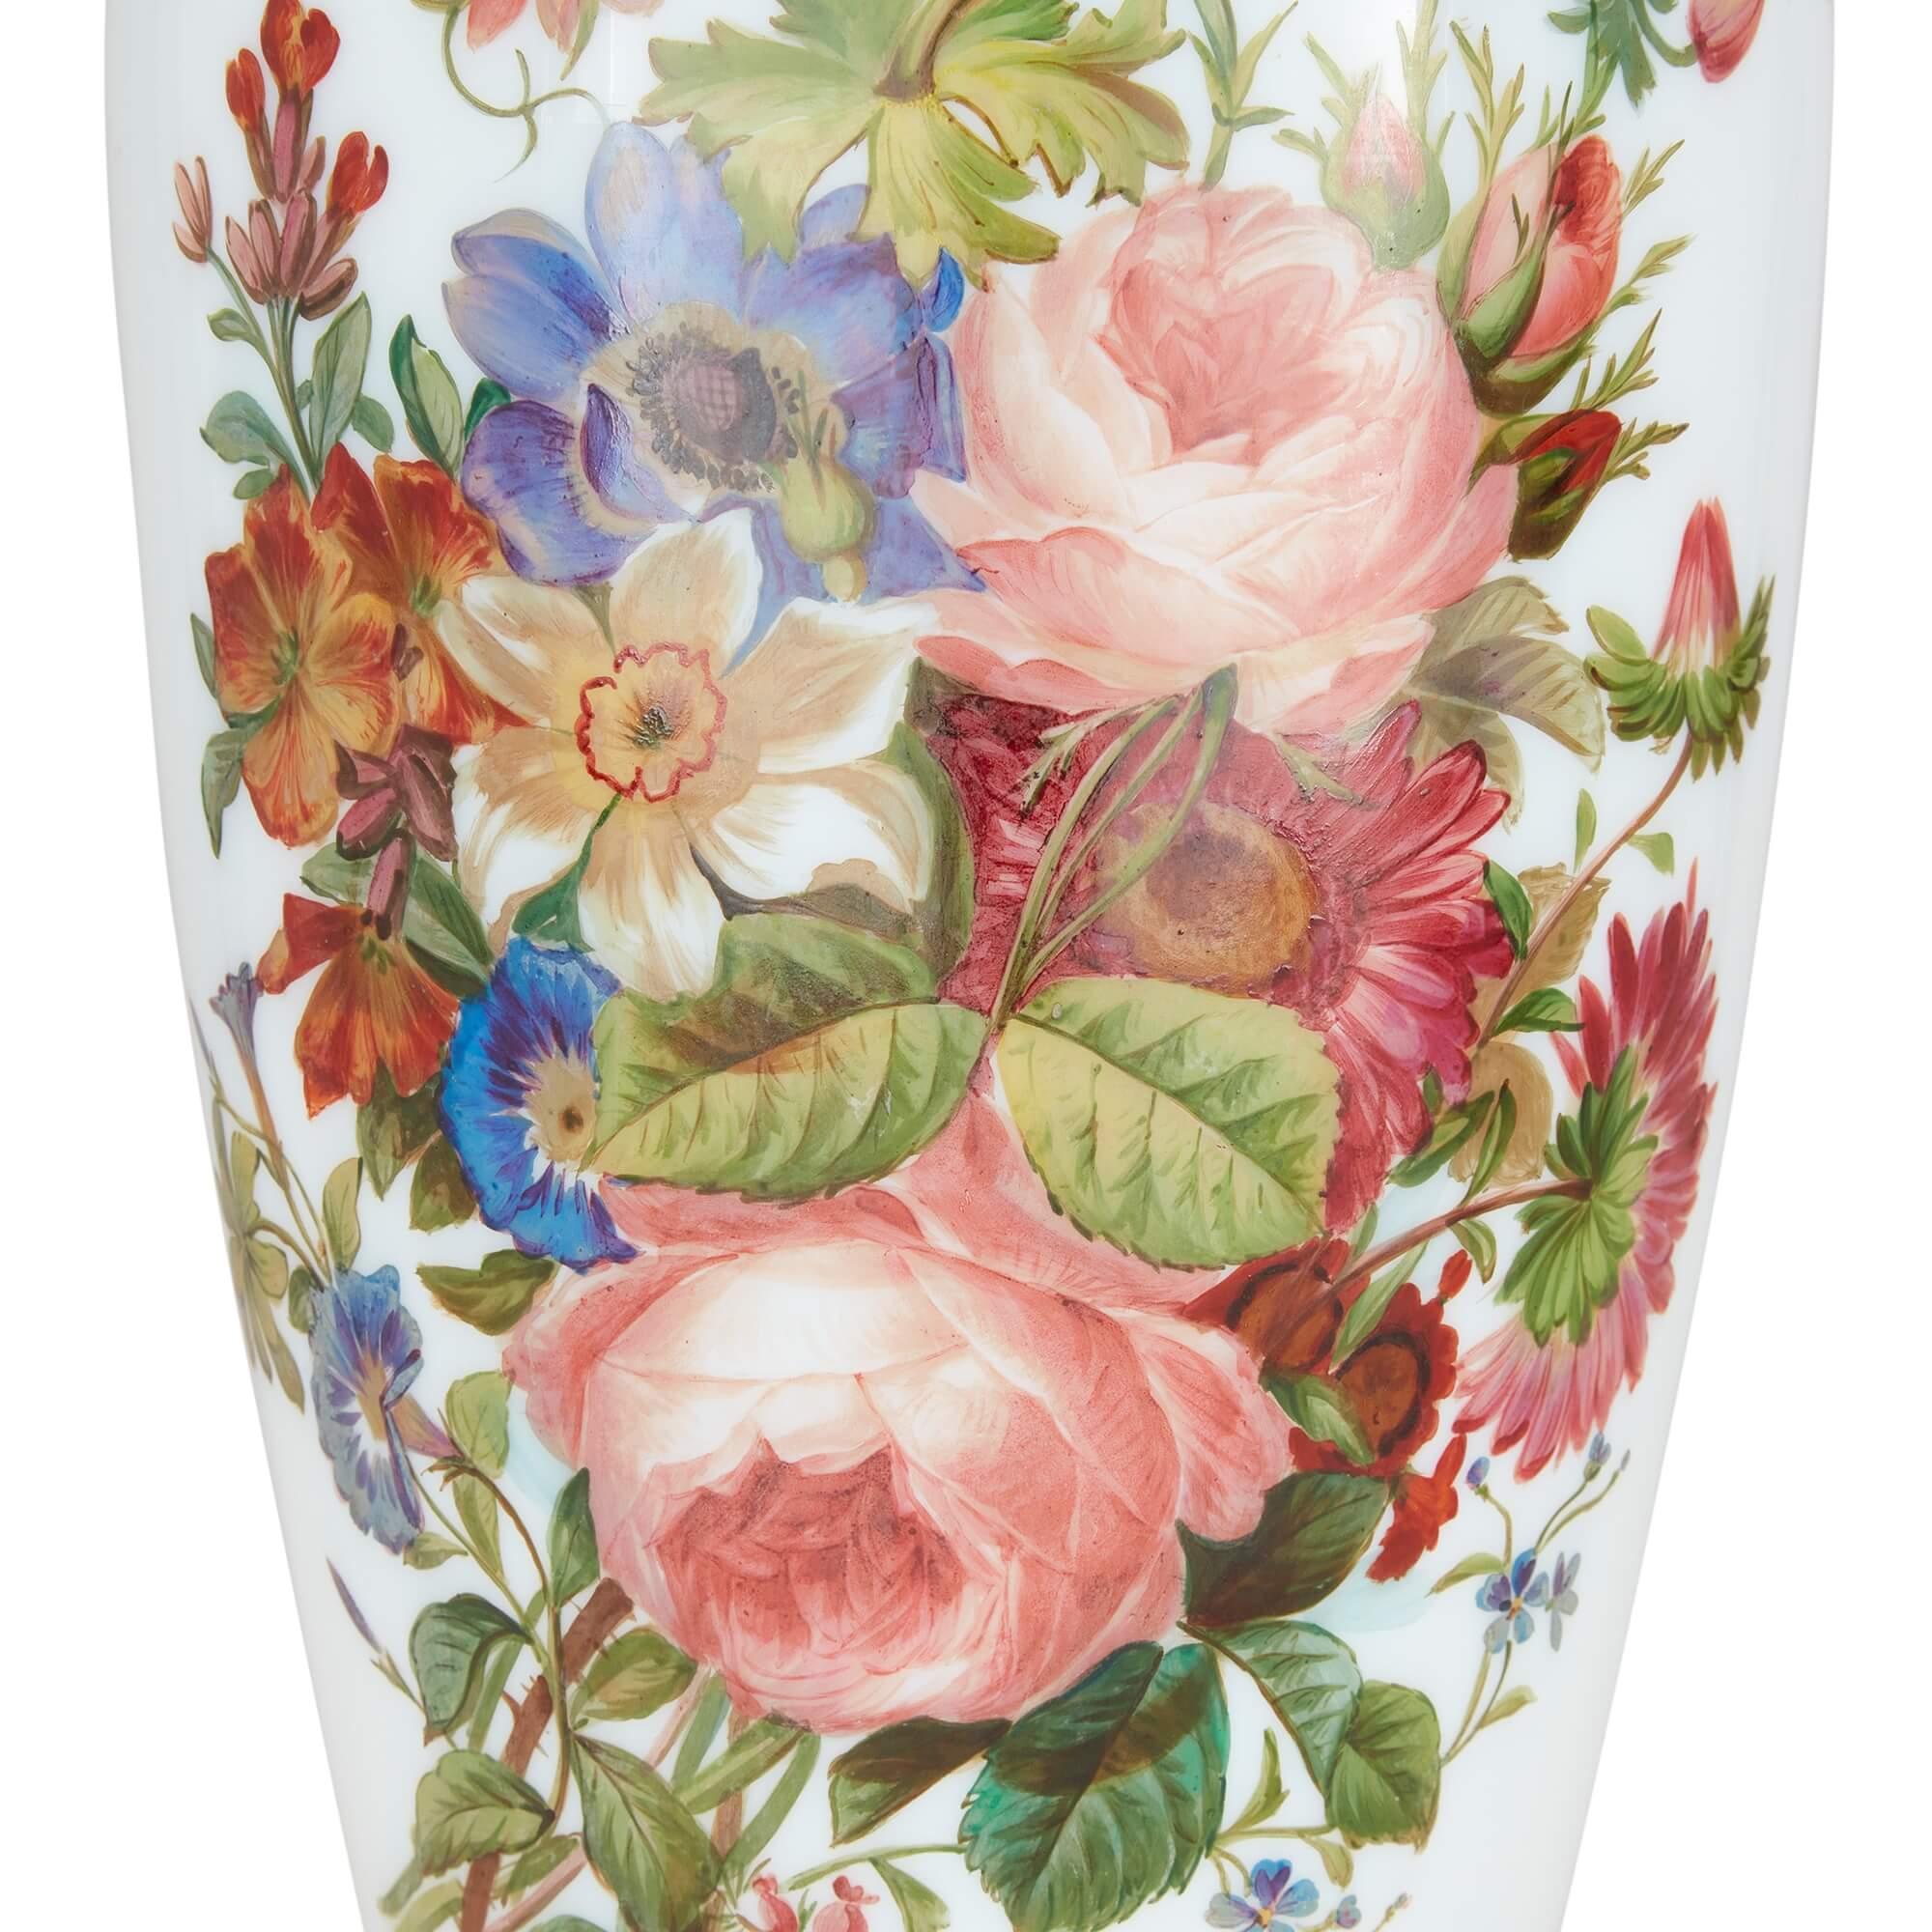 Paire de vases en verre opalin floral de Baccarat
Français, 19e siècle
Hauteur 55,5 cm, diamètre 20 cm

Merveilleusement réalisée par Baccarat, la célèbre firme française de verrerie, cette paire de vases est ornée de charmants bouquets de fleurs.